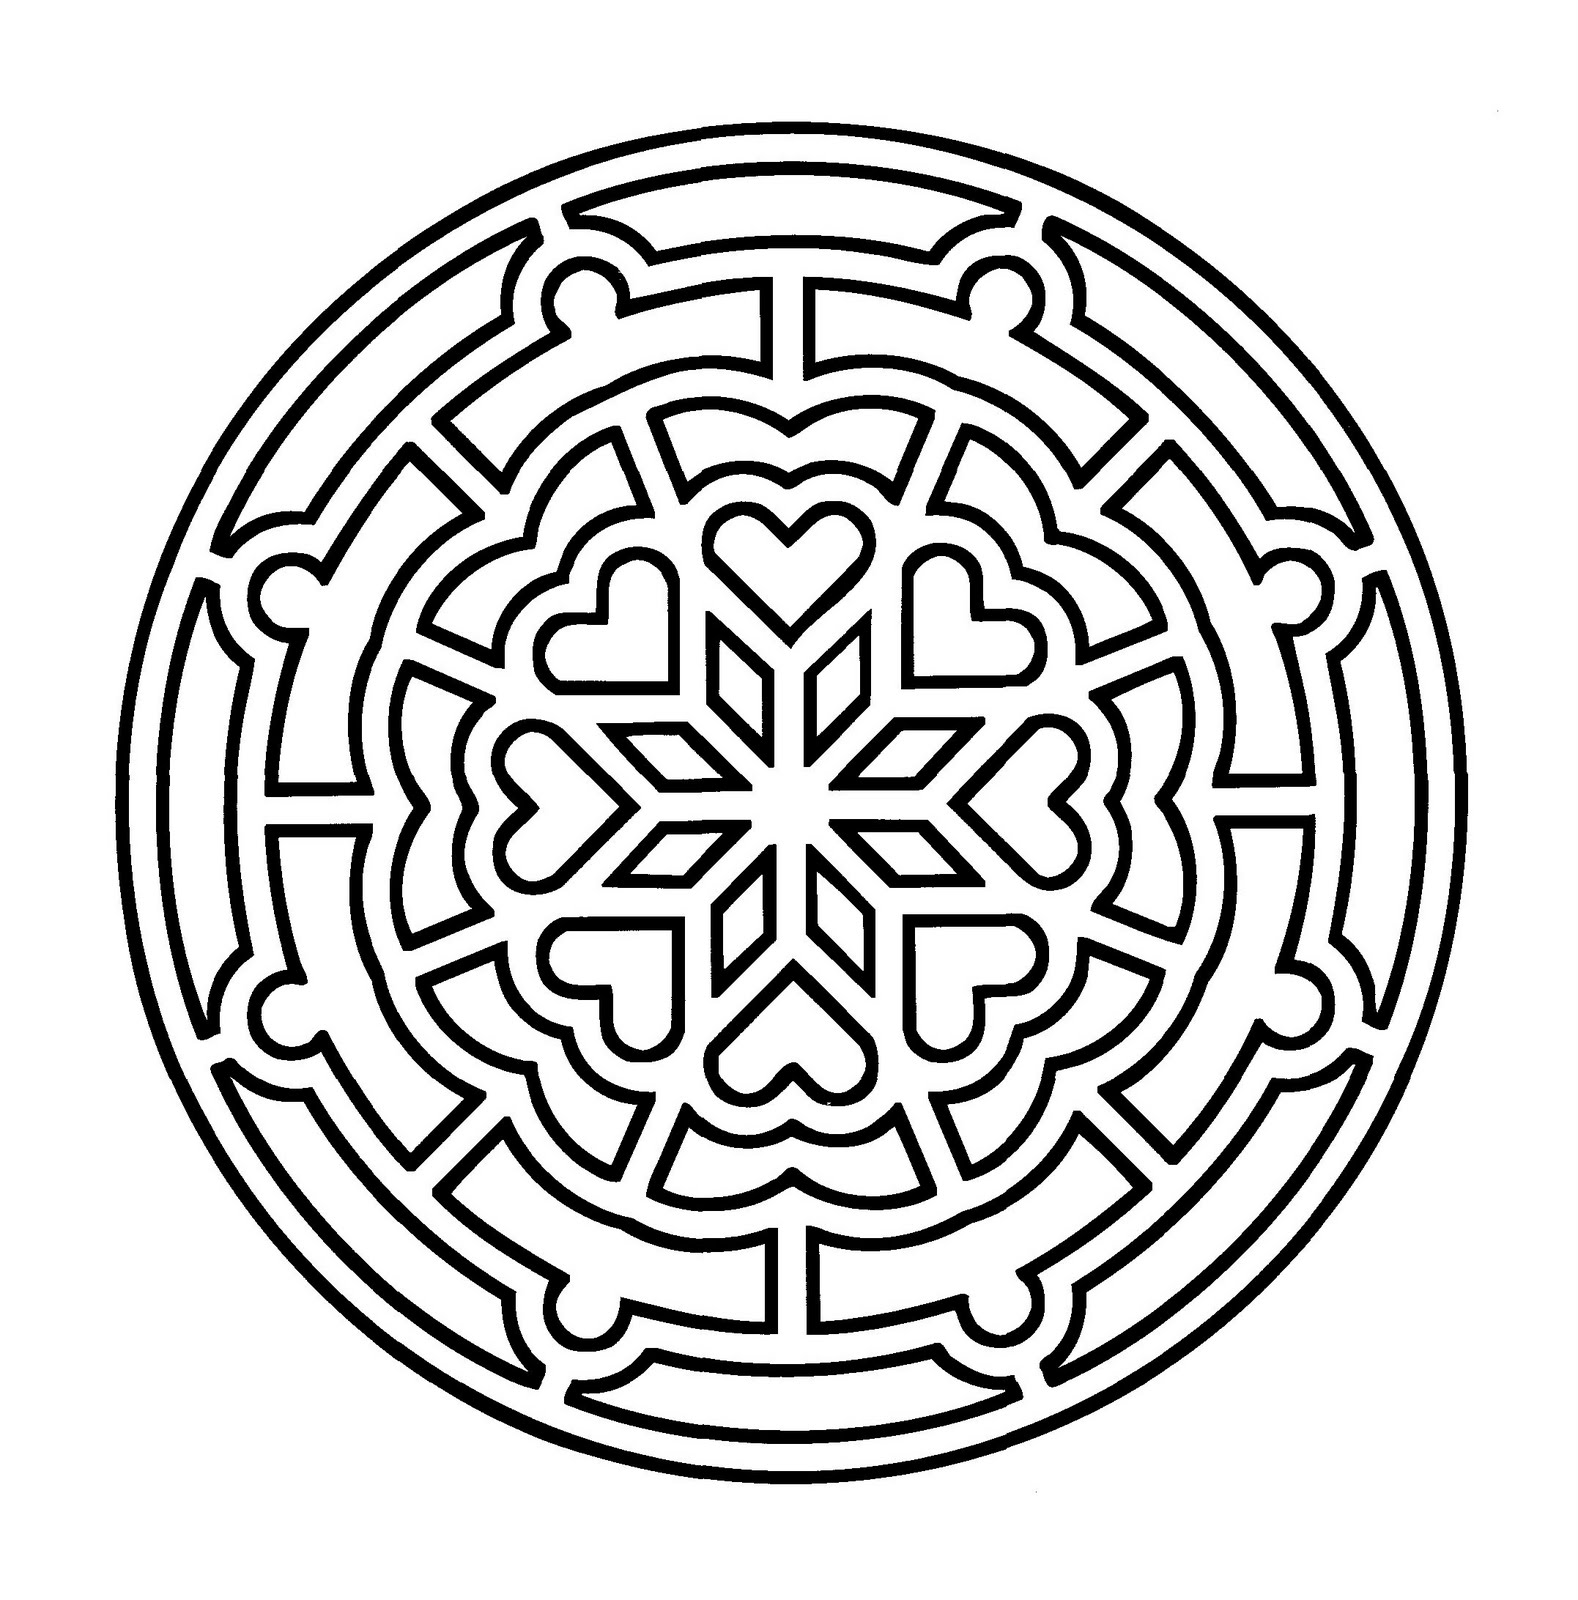 Mandala zum Ausmalen in geometrischer Form mit Herzen in der Mitte.